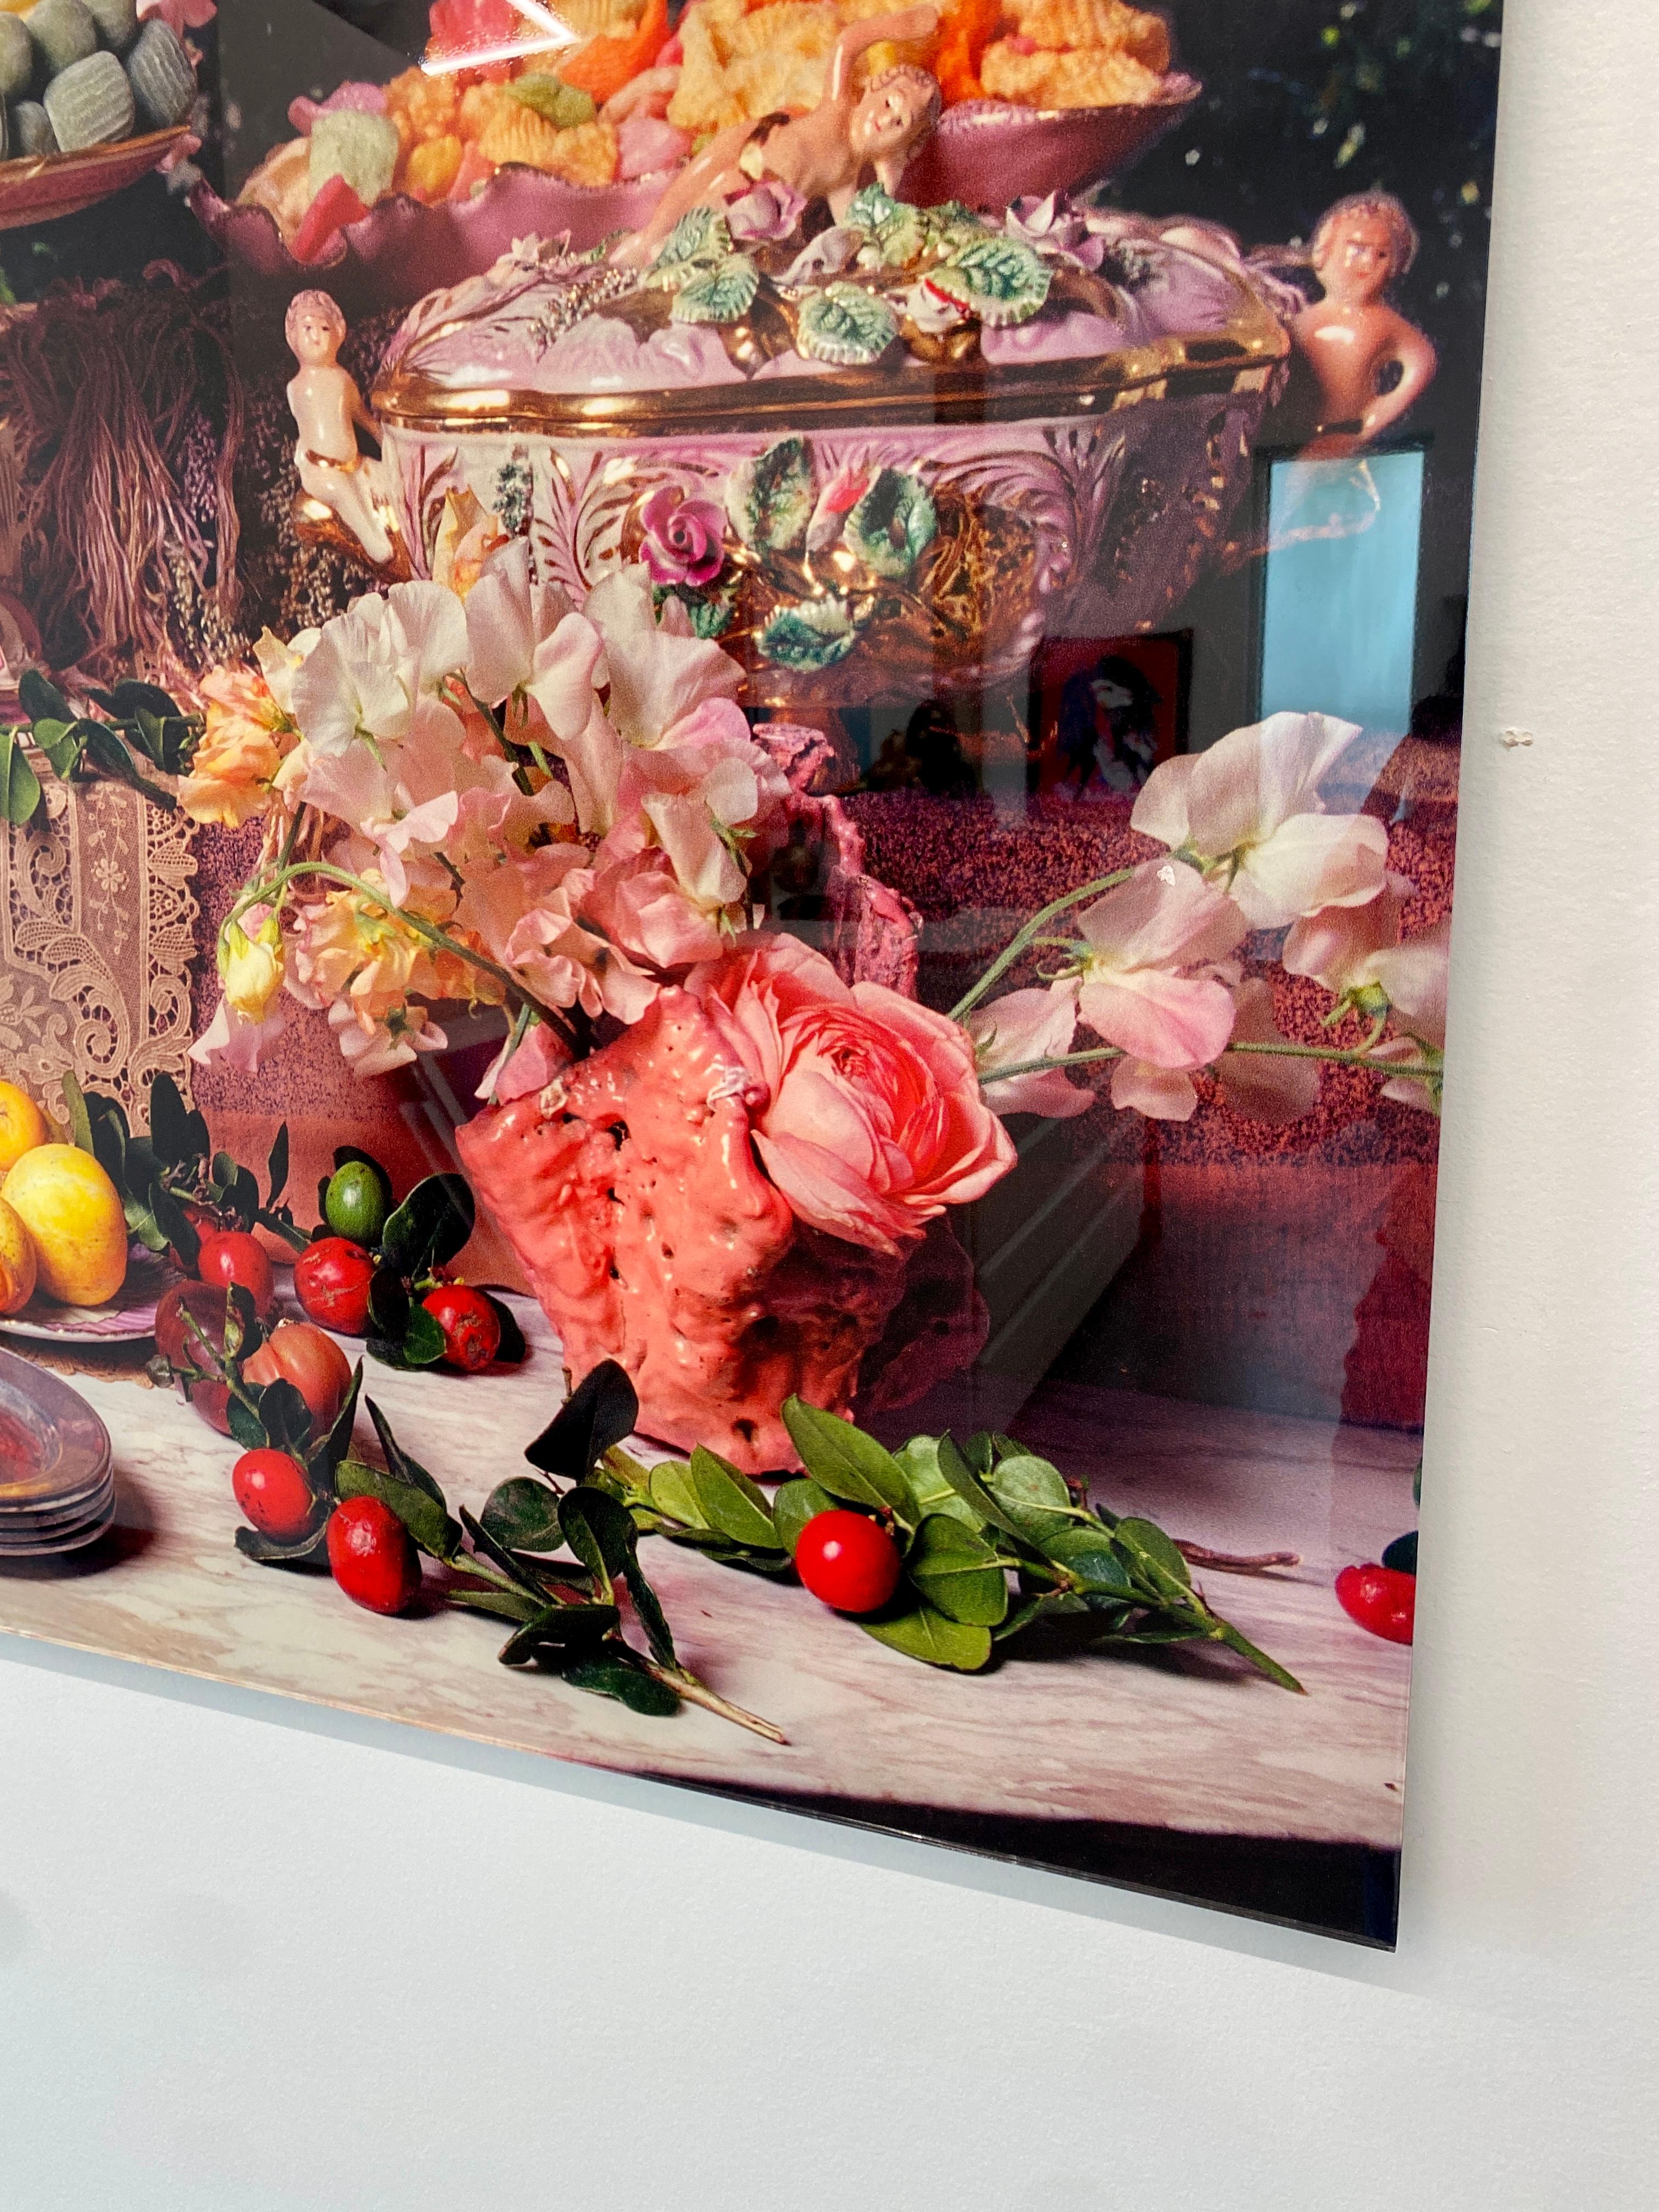 Die Serie Conceptual Still Life umfasst Fotografien und Gemälde, die sich mit der Art und Weise befassen, wie Lebensmittel und Blumen im Laufe der Geschichte als Signifikanten verwendet wurden. Diese spielerische Würdigung verbindet die Sensibilität